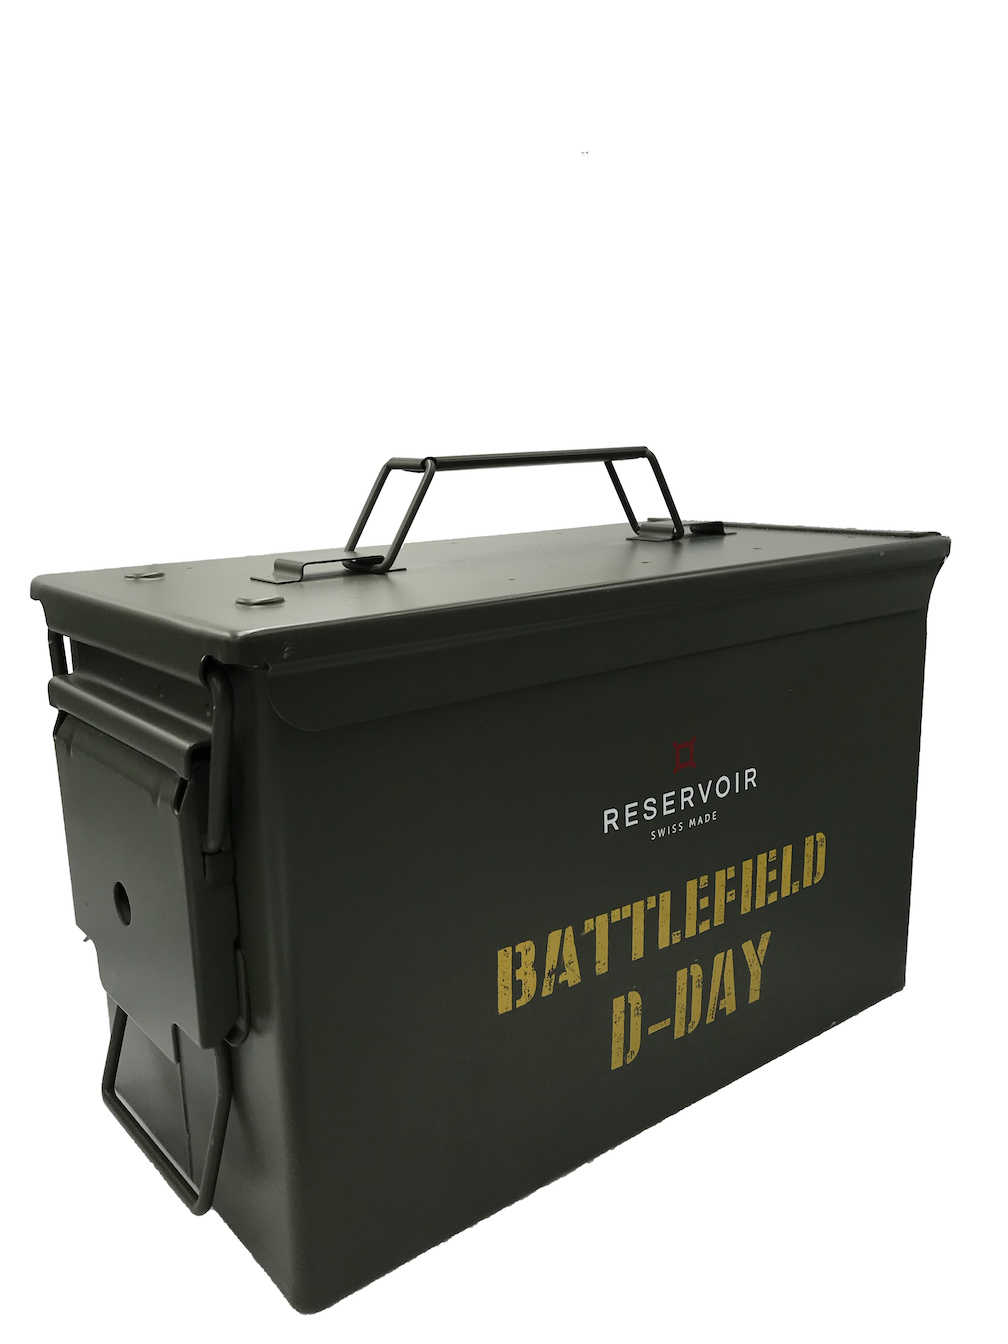 Reservoir Battlefield D-Day watch 